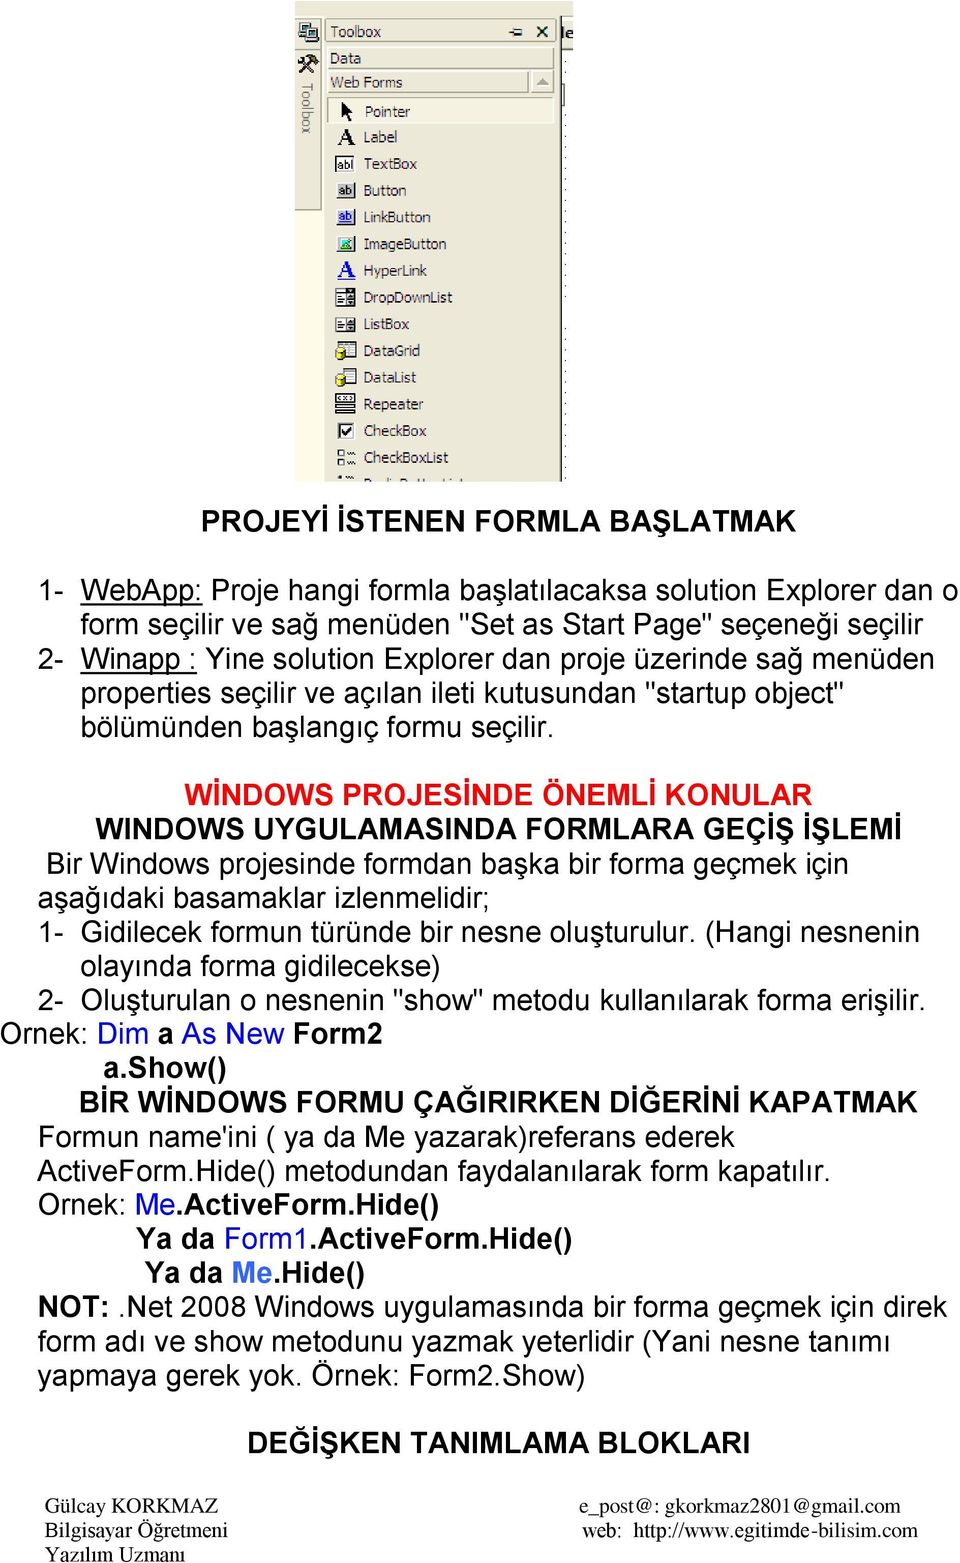 WĠNDOWS PROJESĠNDE ÖNEMLĠ KONULAR WINDOWS UYGULAMASINDA FORMLARA GEÇĠġ ĠġLEMĠ Bir Windows projesinde formdan başka bir forma geçmek için aşağıdaki basamaklar izlenmelidir; 1- Gidilecek formun türünde